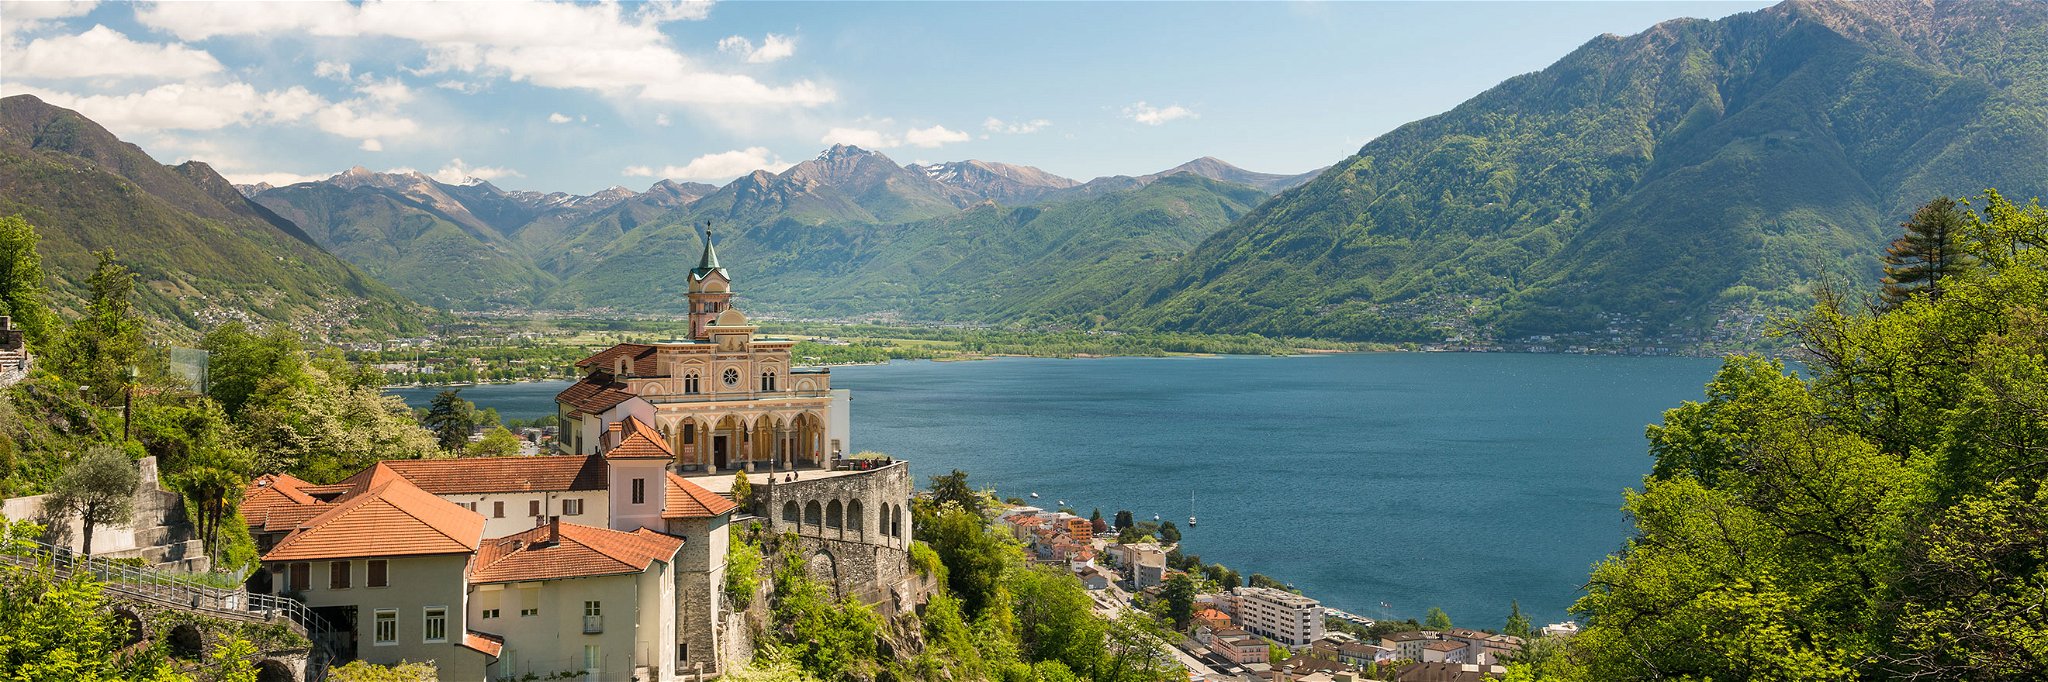 Im Herzen&nbsp;des Sopraceneri: Blick von Madonna del Sasso auf den Lago Maggiore.